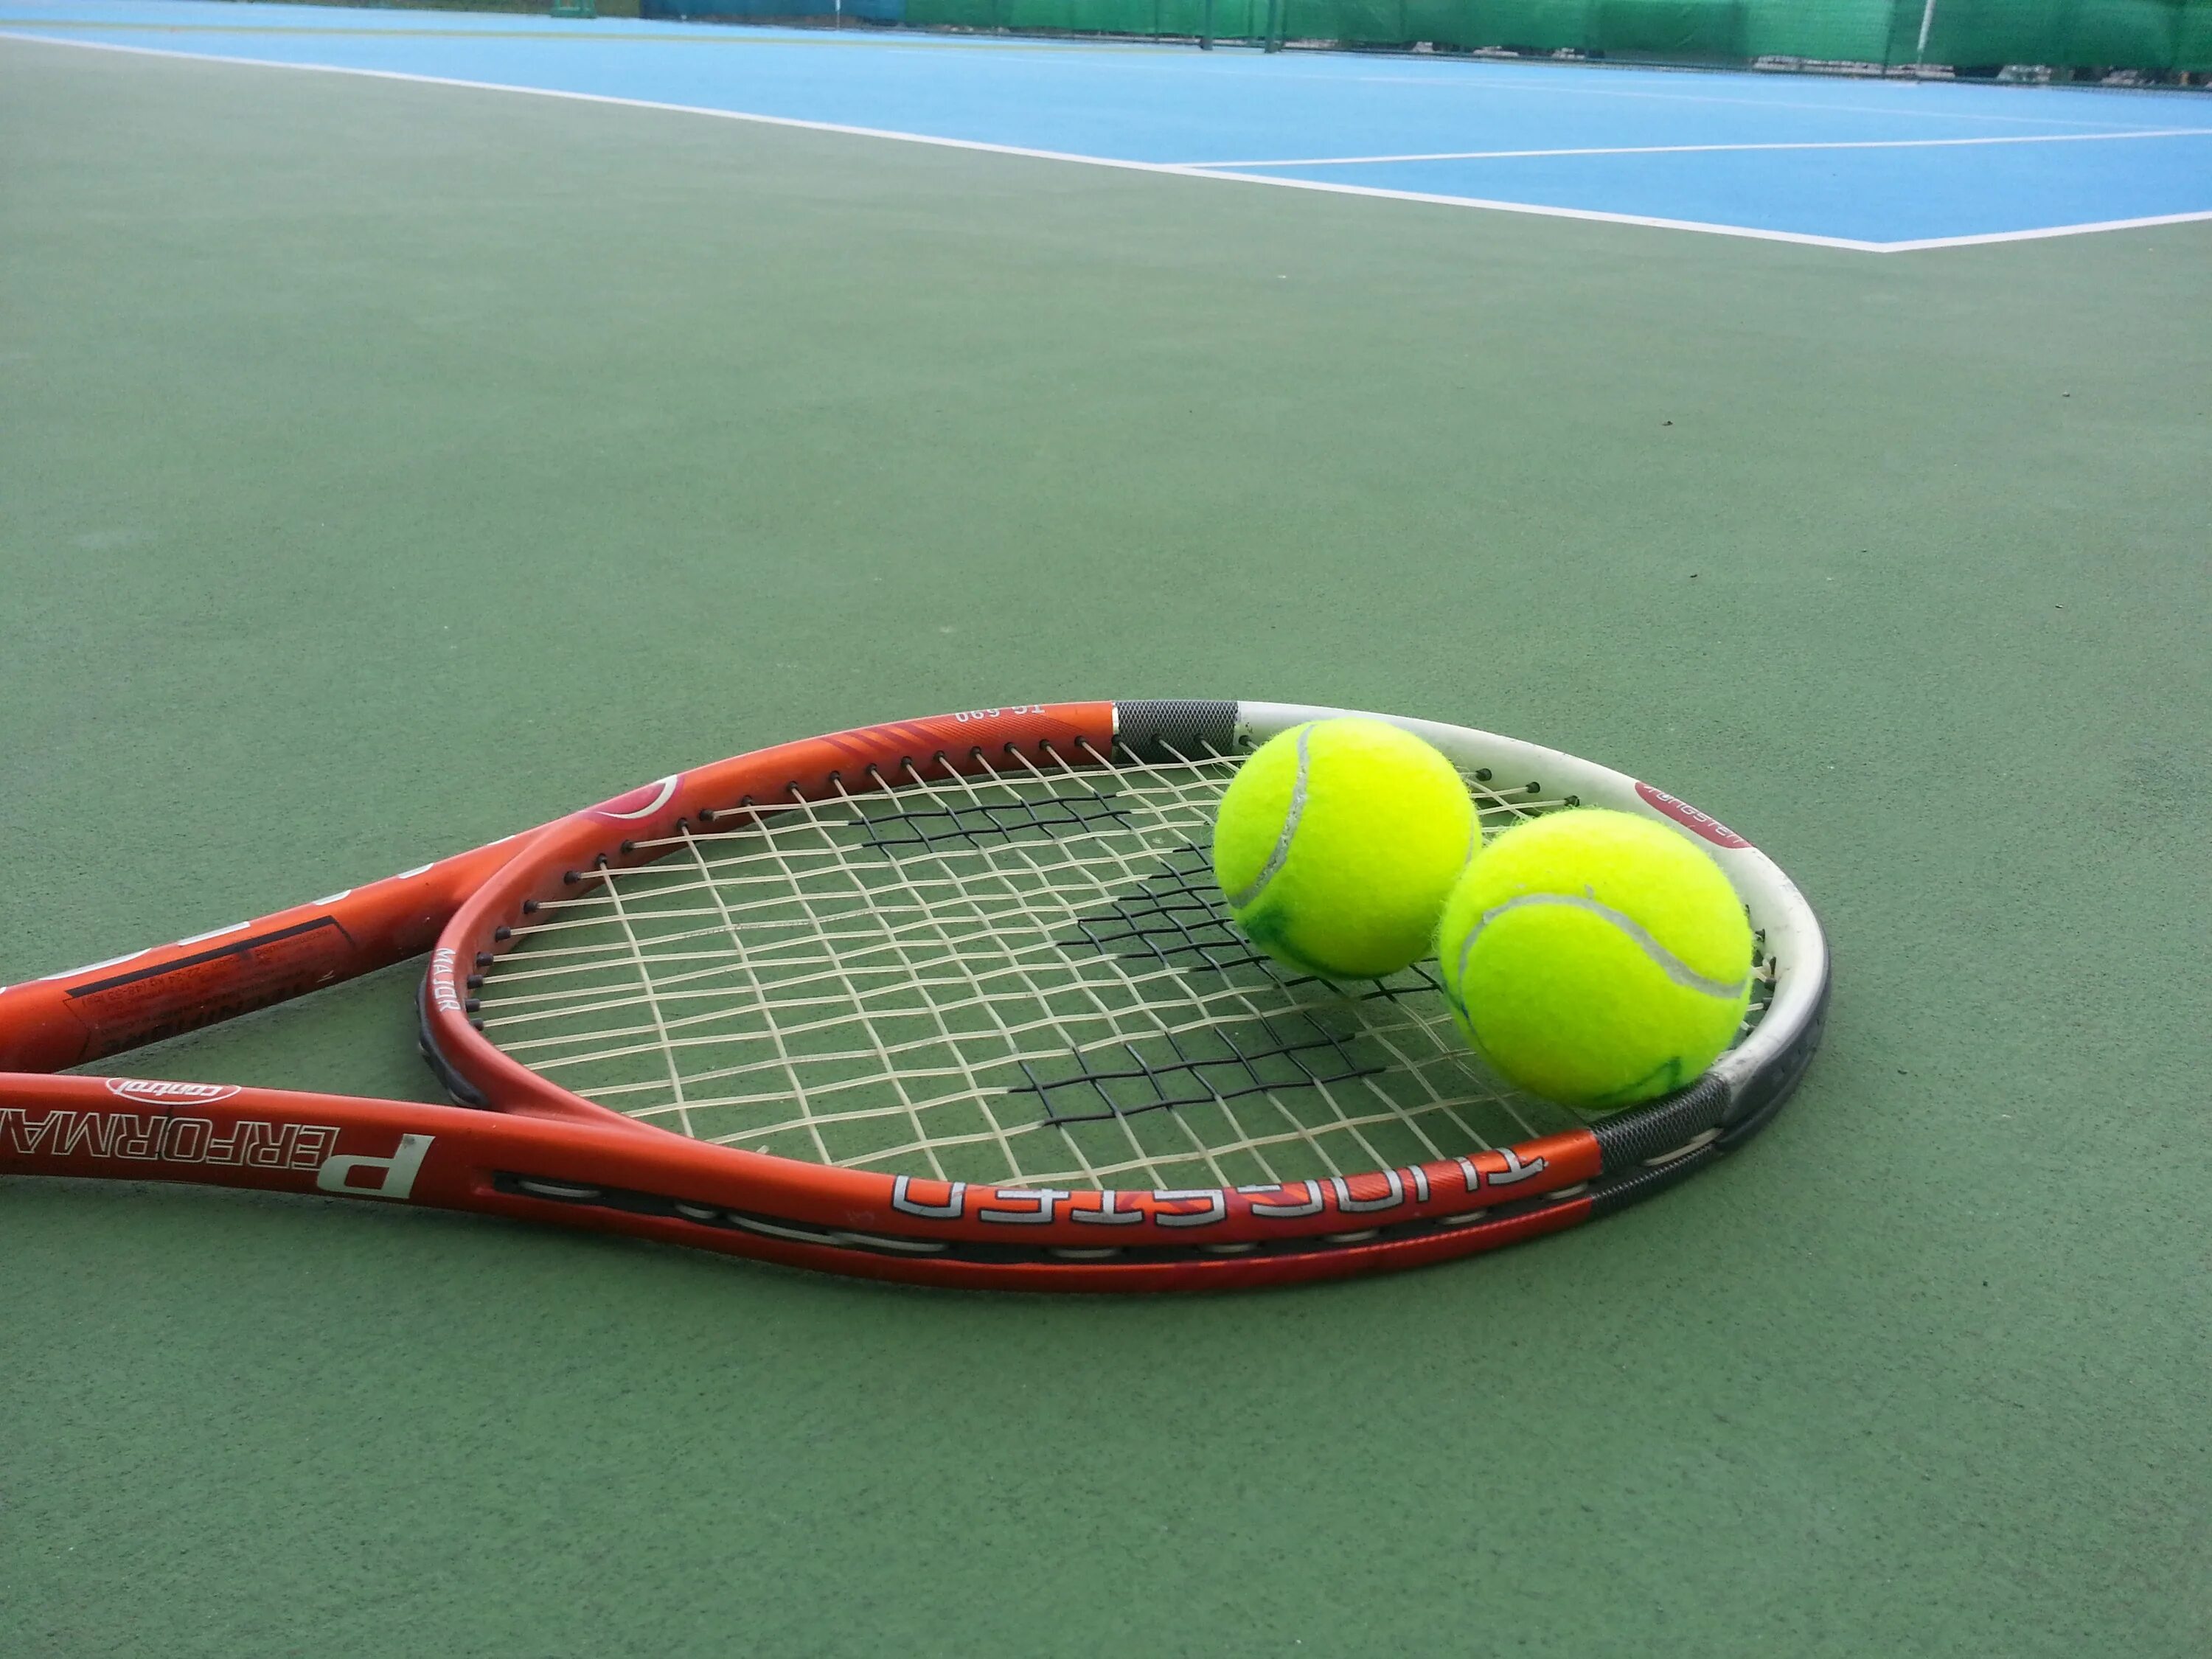 Теннисные матчи. Теннис. Теннисный корт иллюстрация. Теннисисты большого тенниса. Теннис картинки.